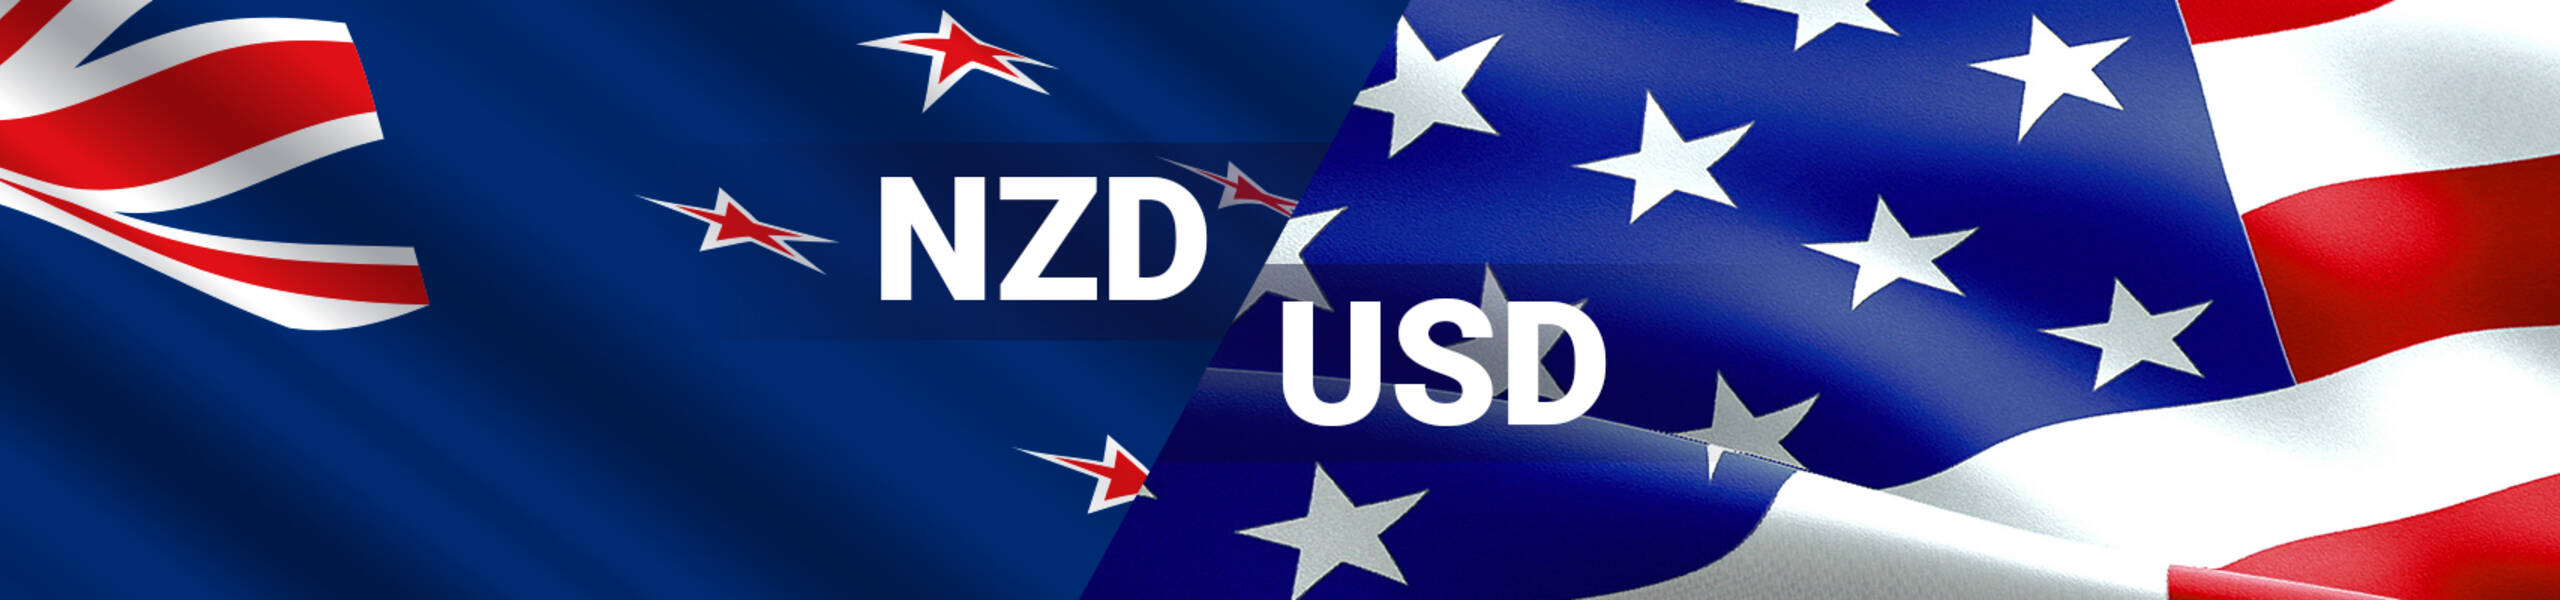 Kế hoạch giao dịch cặp ngoại tệ NZDUSD ngày 29/12/2017